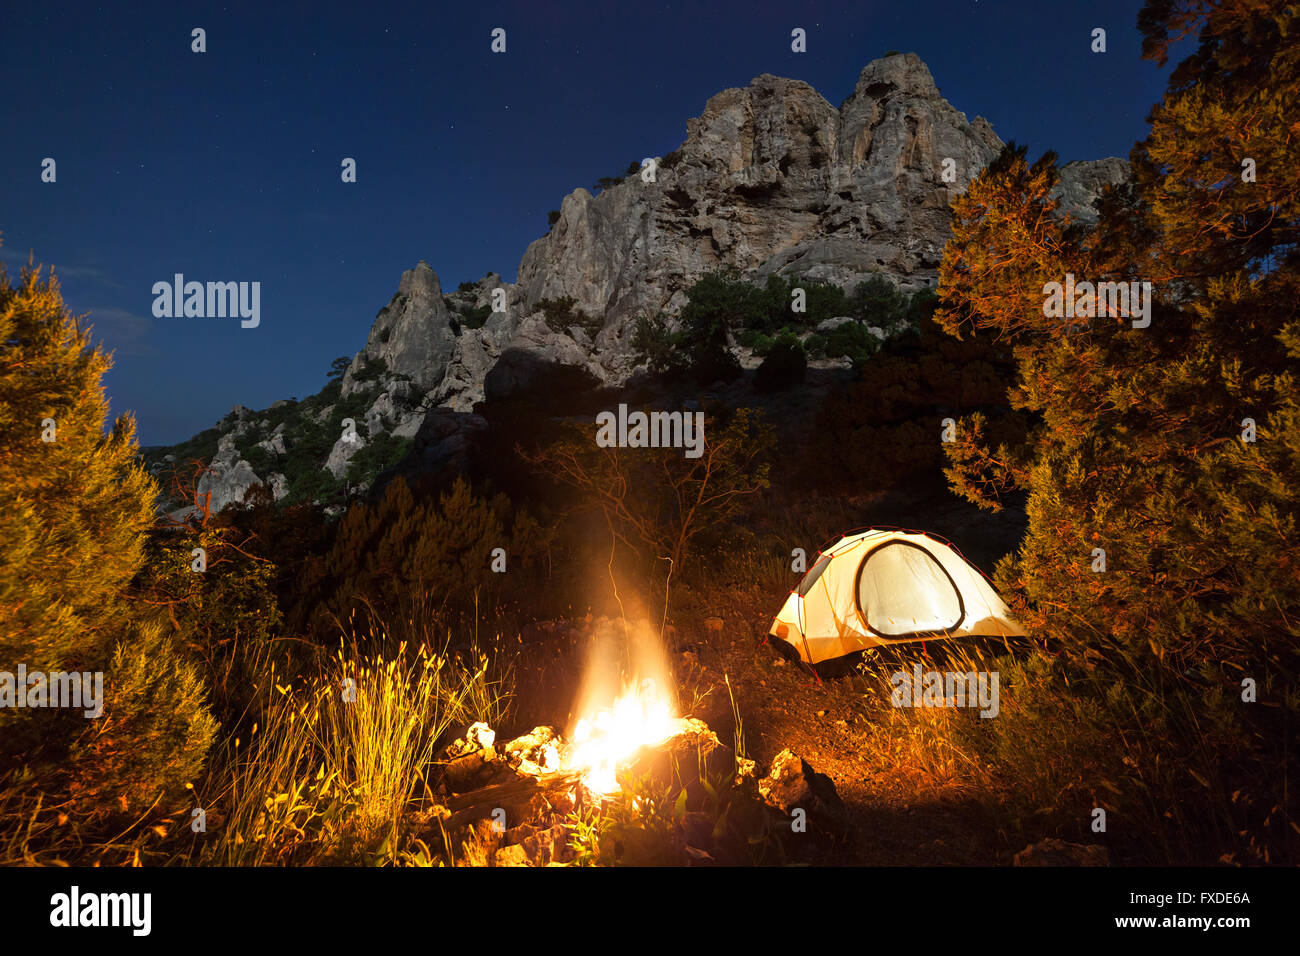 Camping at night Stock Photo